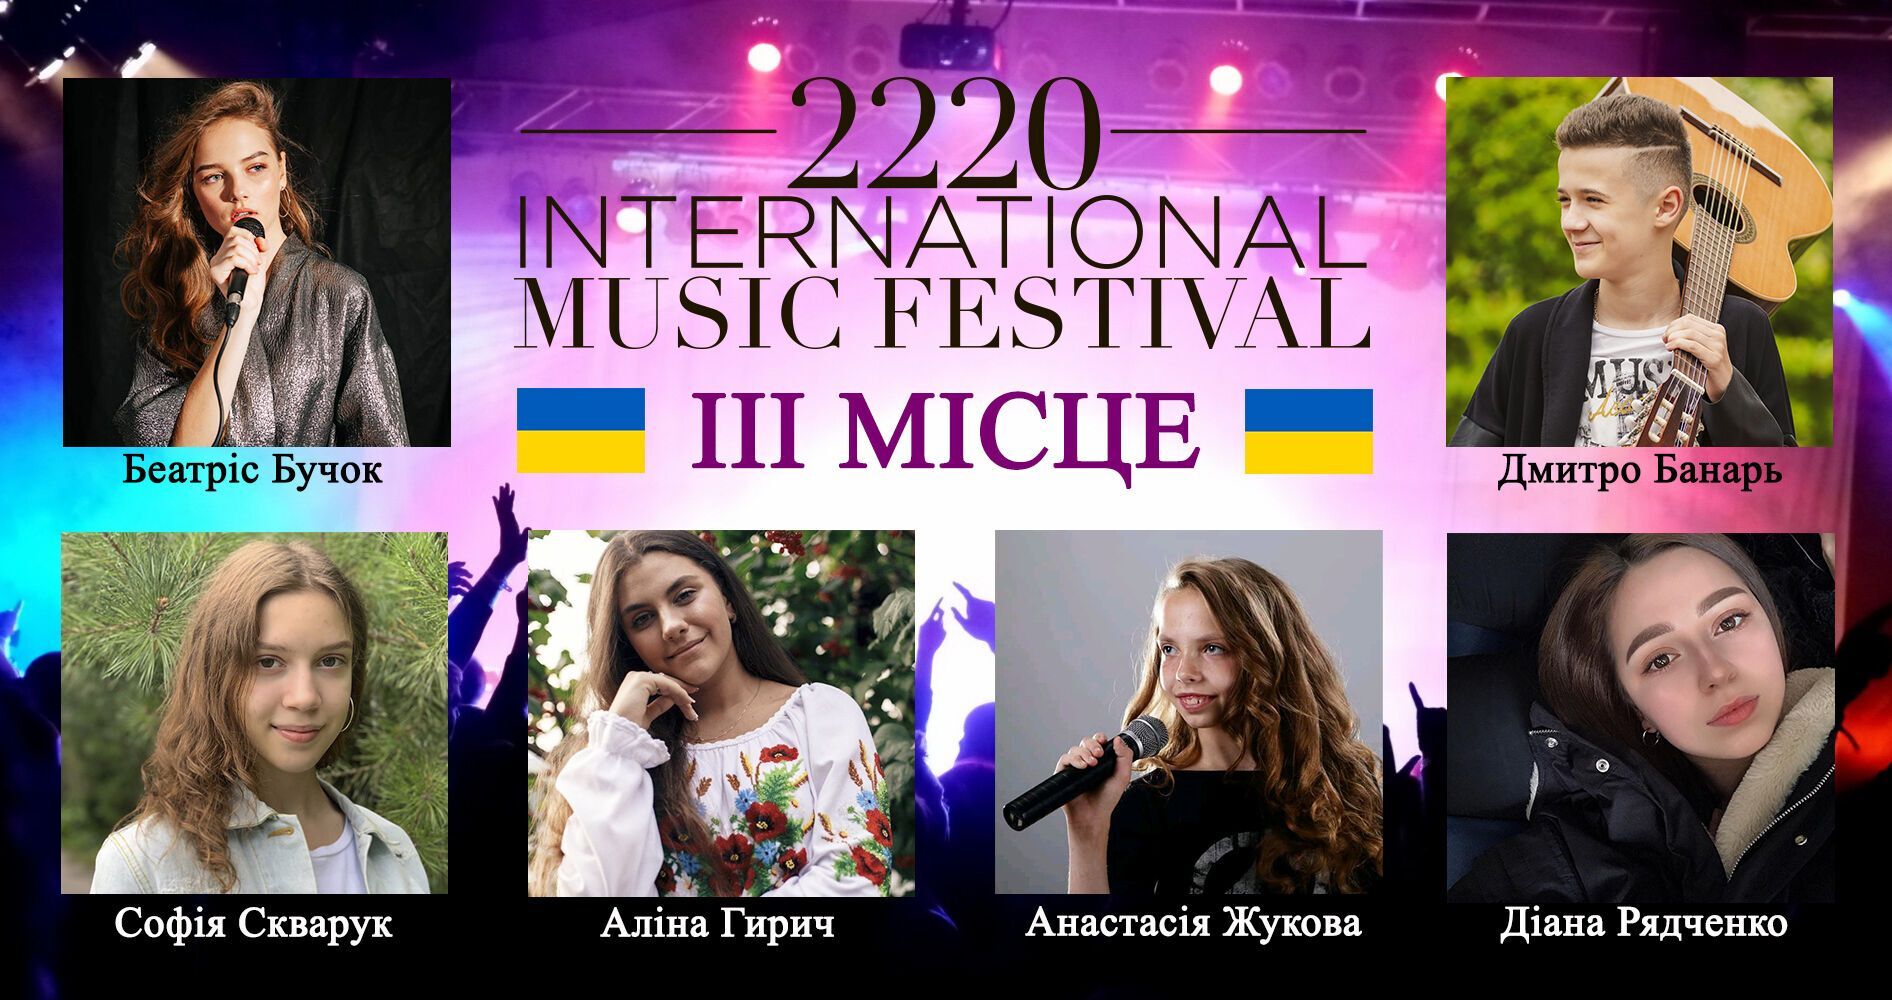 2220 International Music festival.